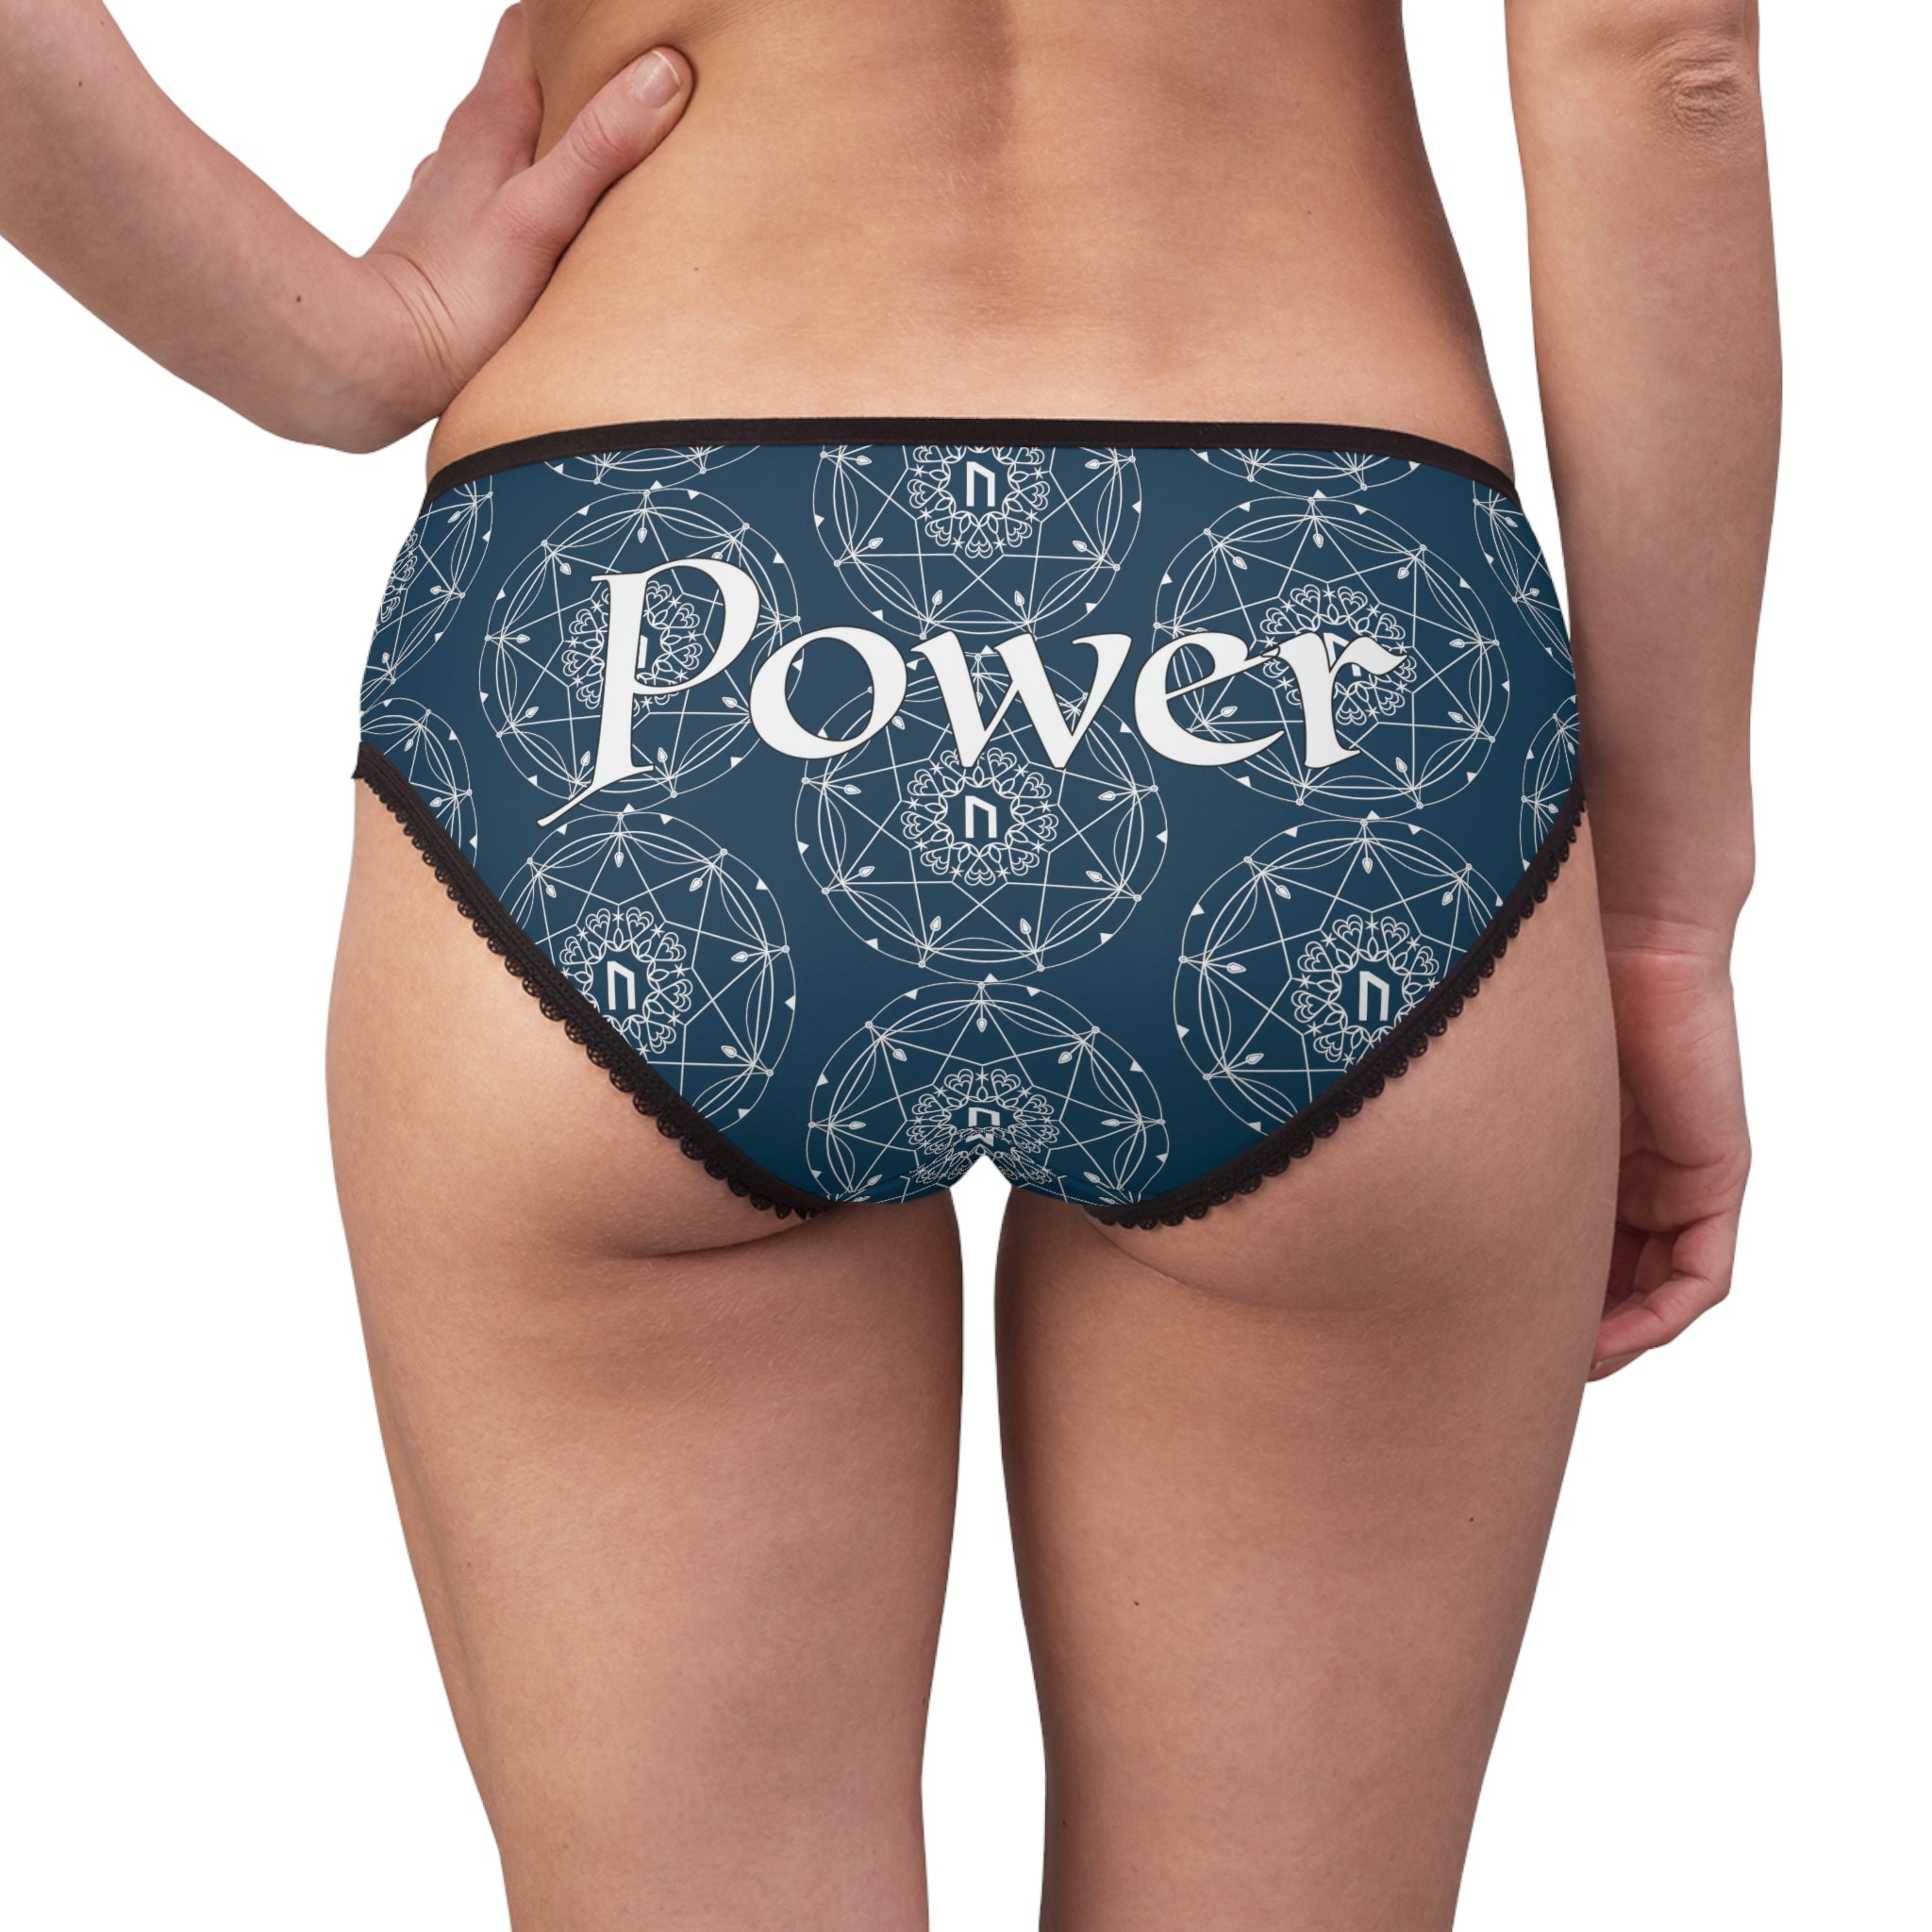 Patti's Power Panties Women's Bikini Brief Panty - Power